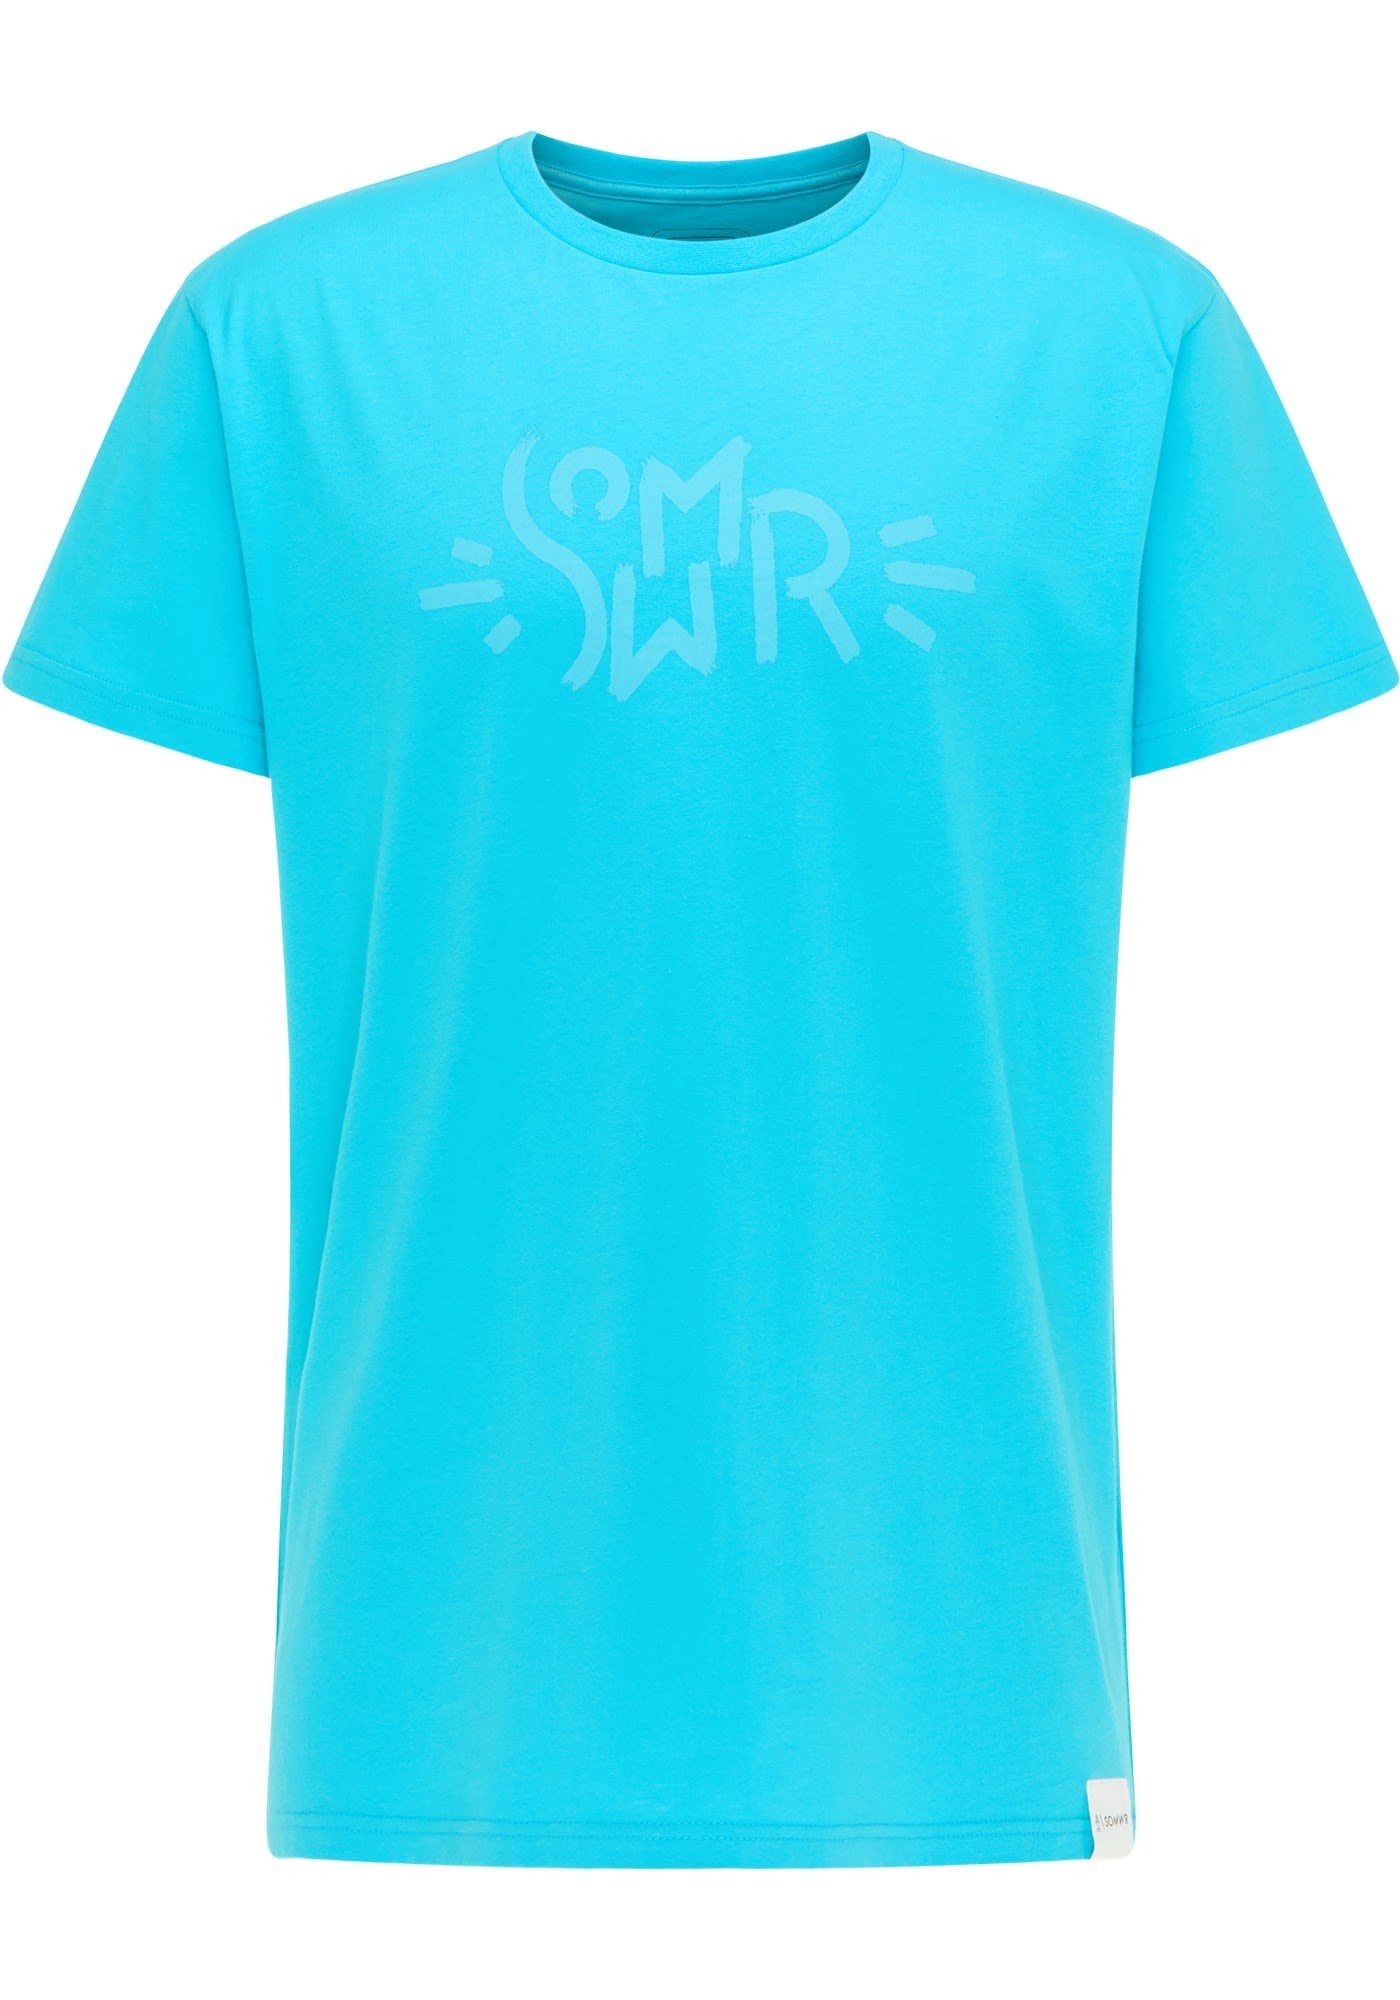 SOMWR T-Shirt Somwr M Smiley Tee Herren Kurzarm-Shirt Scuba Blue